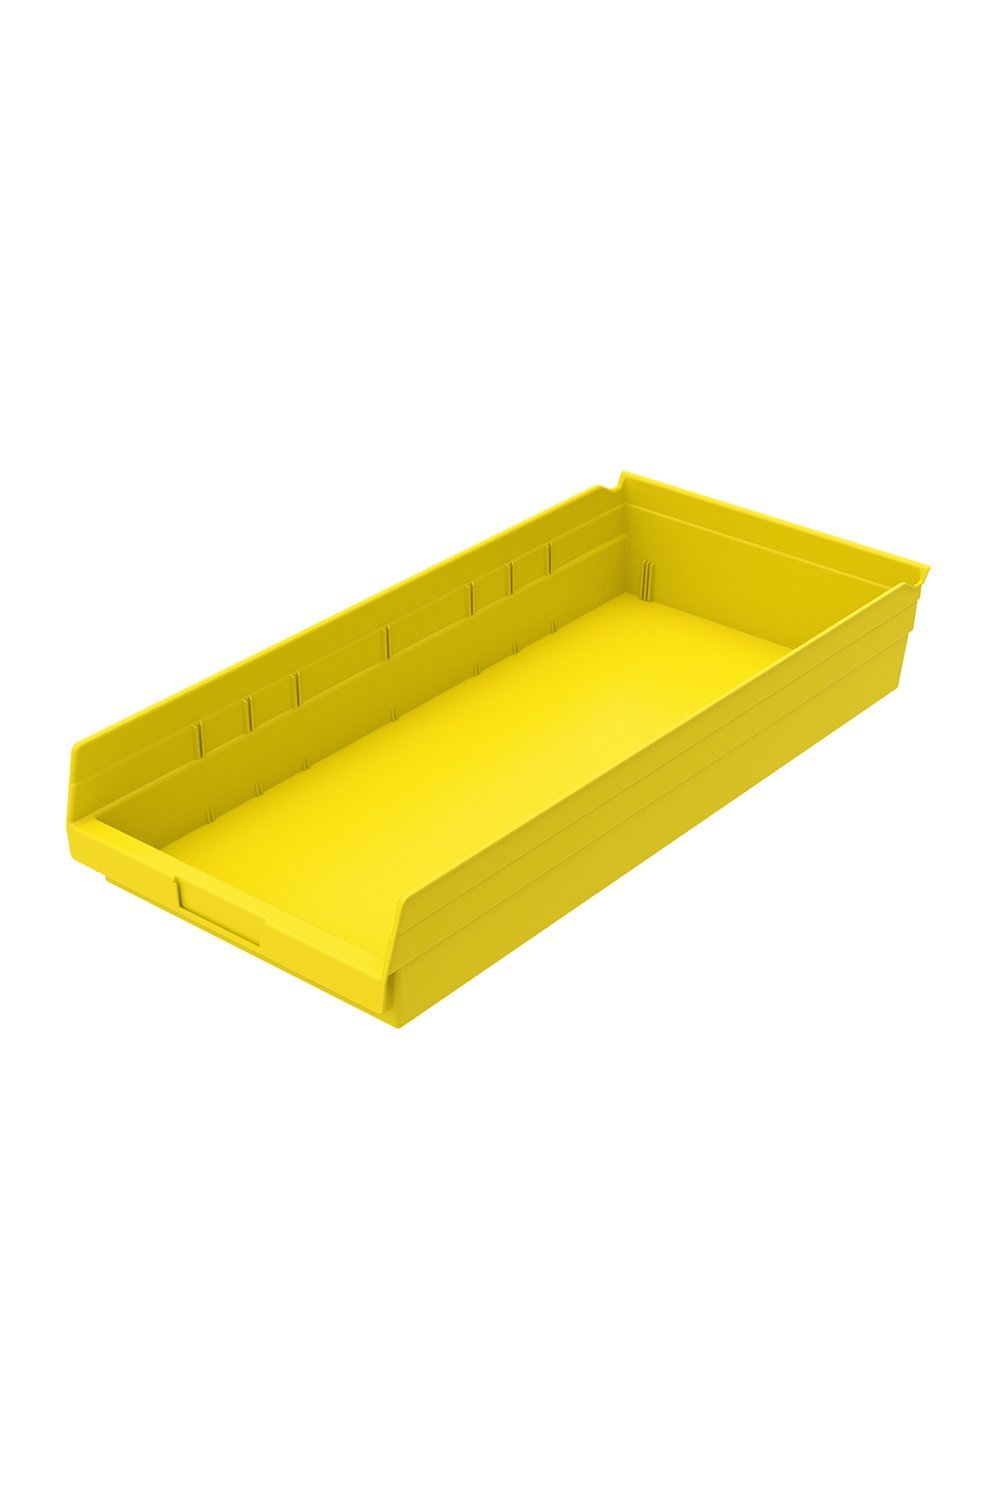 Shelf Bin for 24"D Shelves Bins & Containers Acart 23-5/8'' x 11-1/8'' x 4'' Yellow 